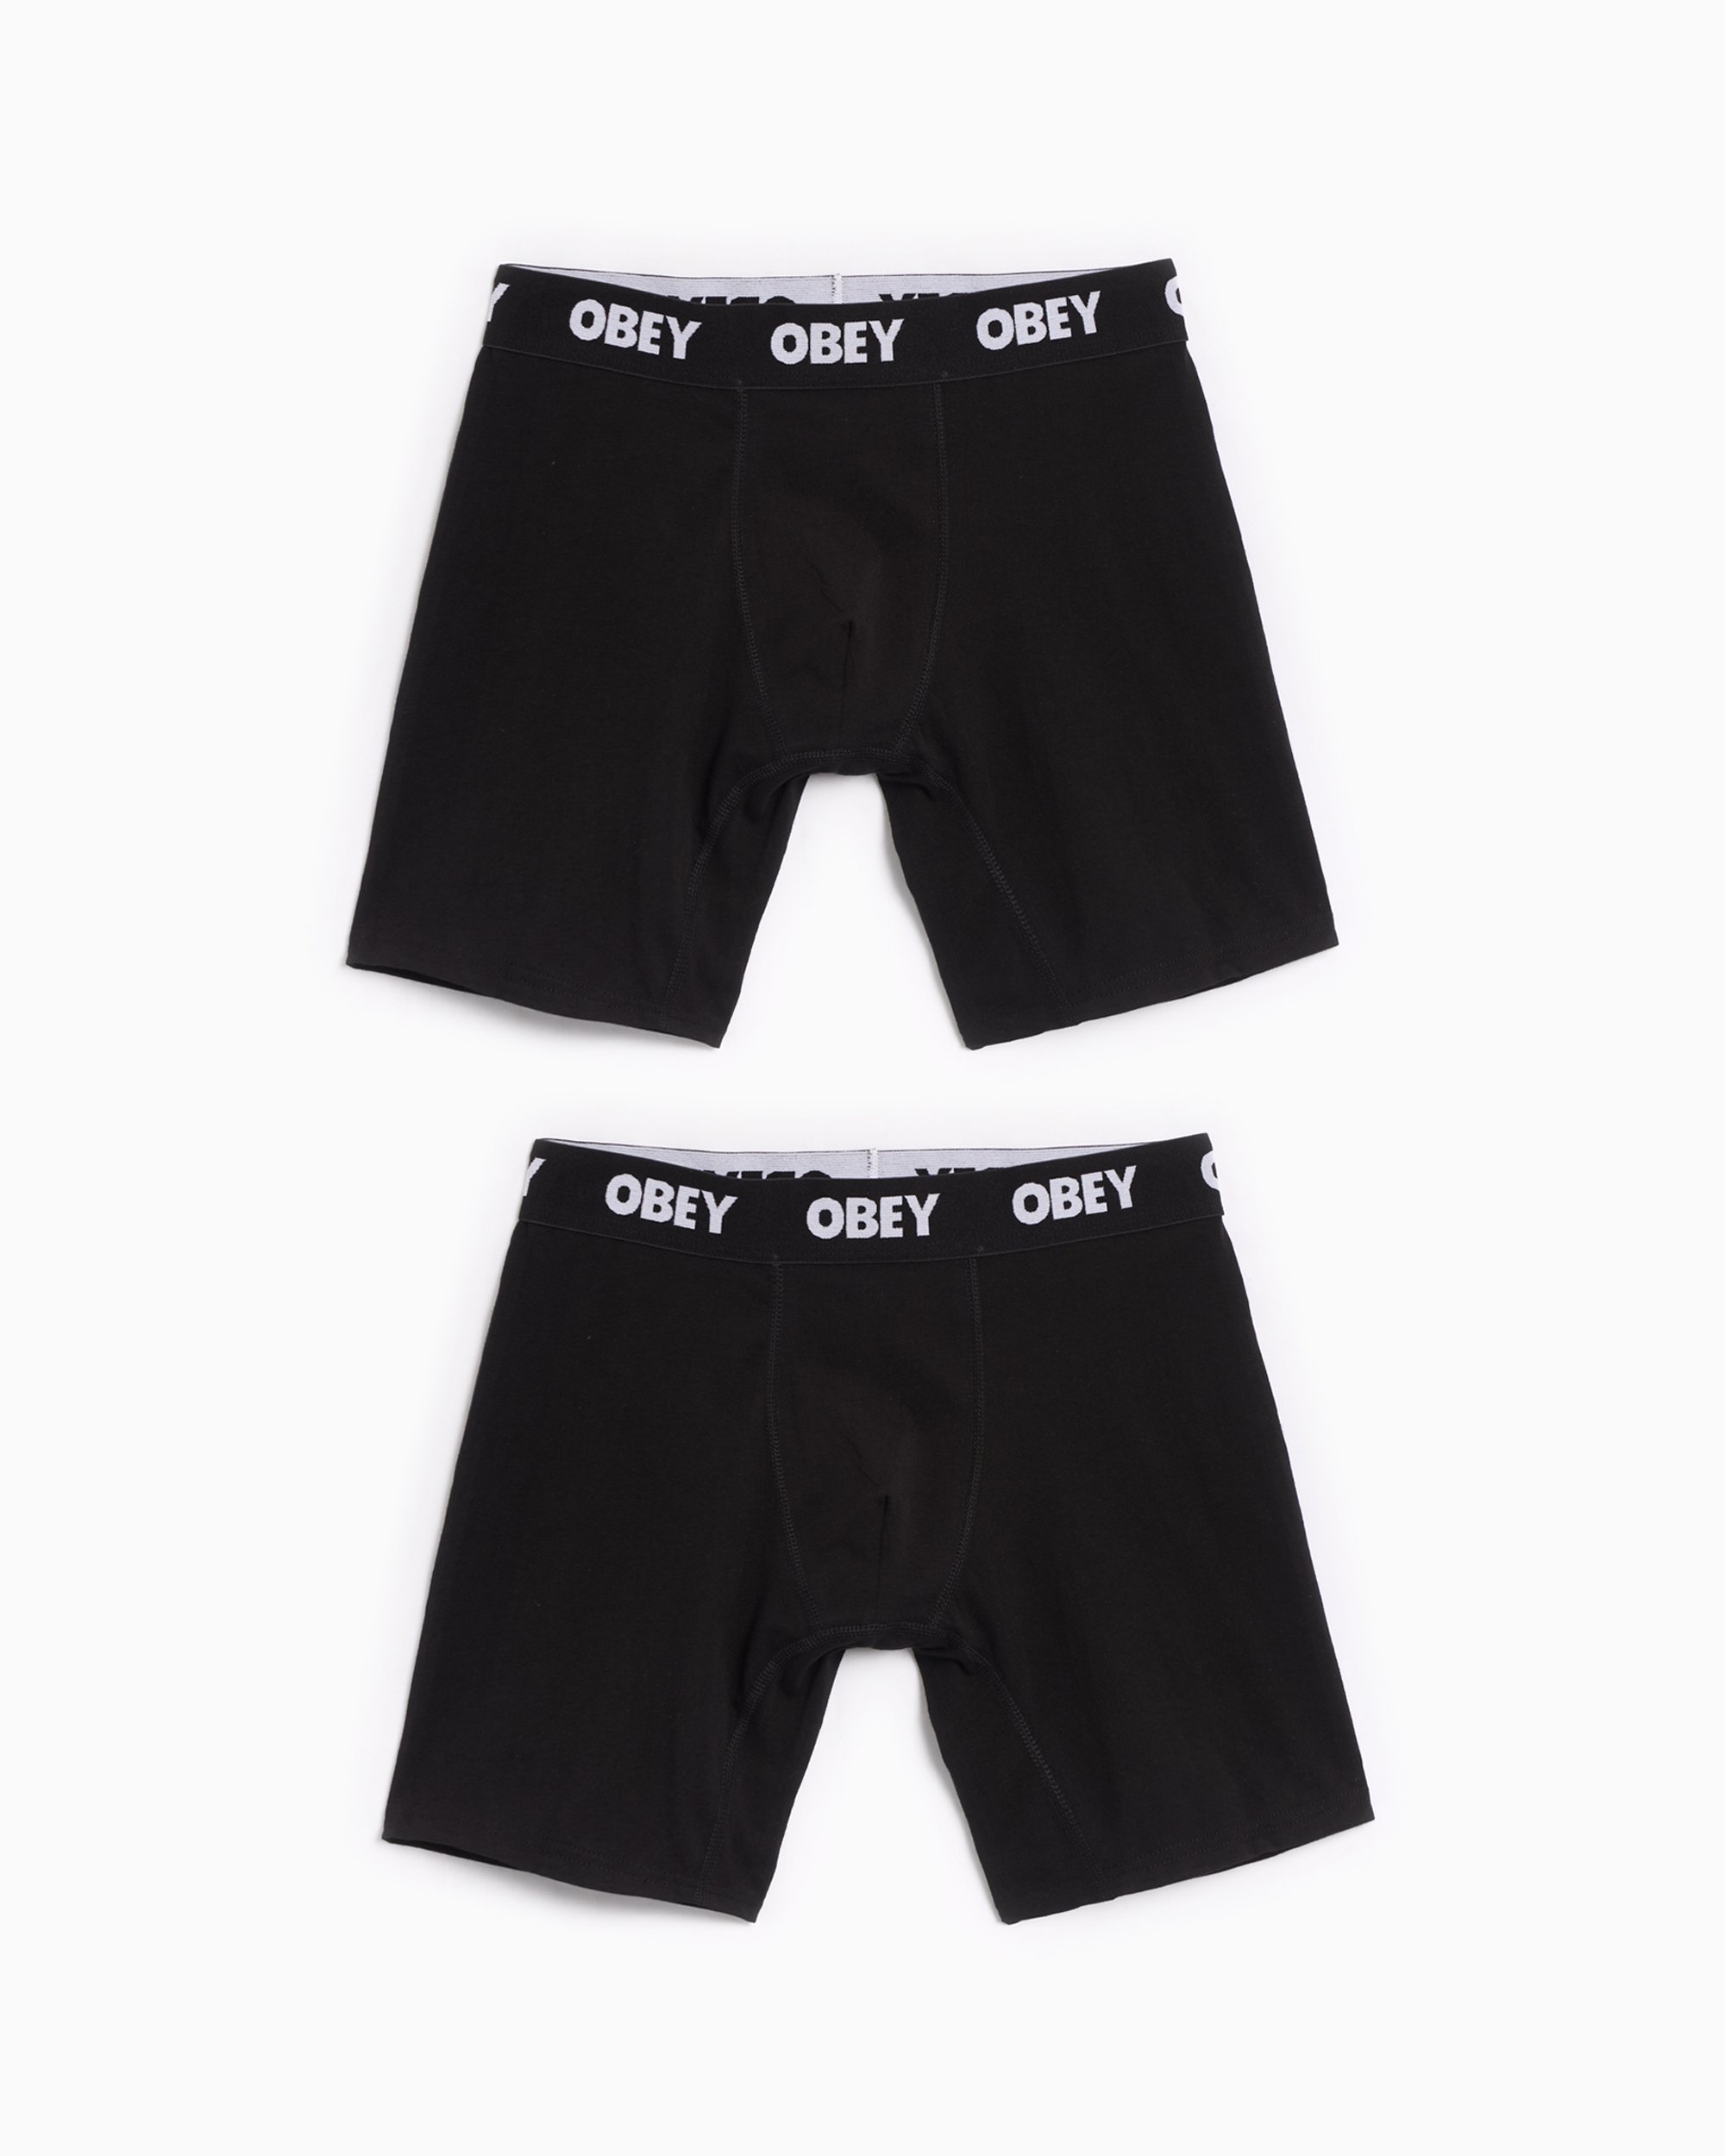 OBEY Clothing Established Work Men's Boxers Black 100090000-BLK